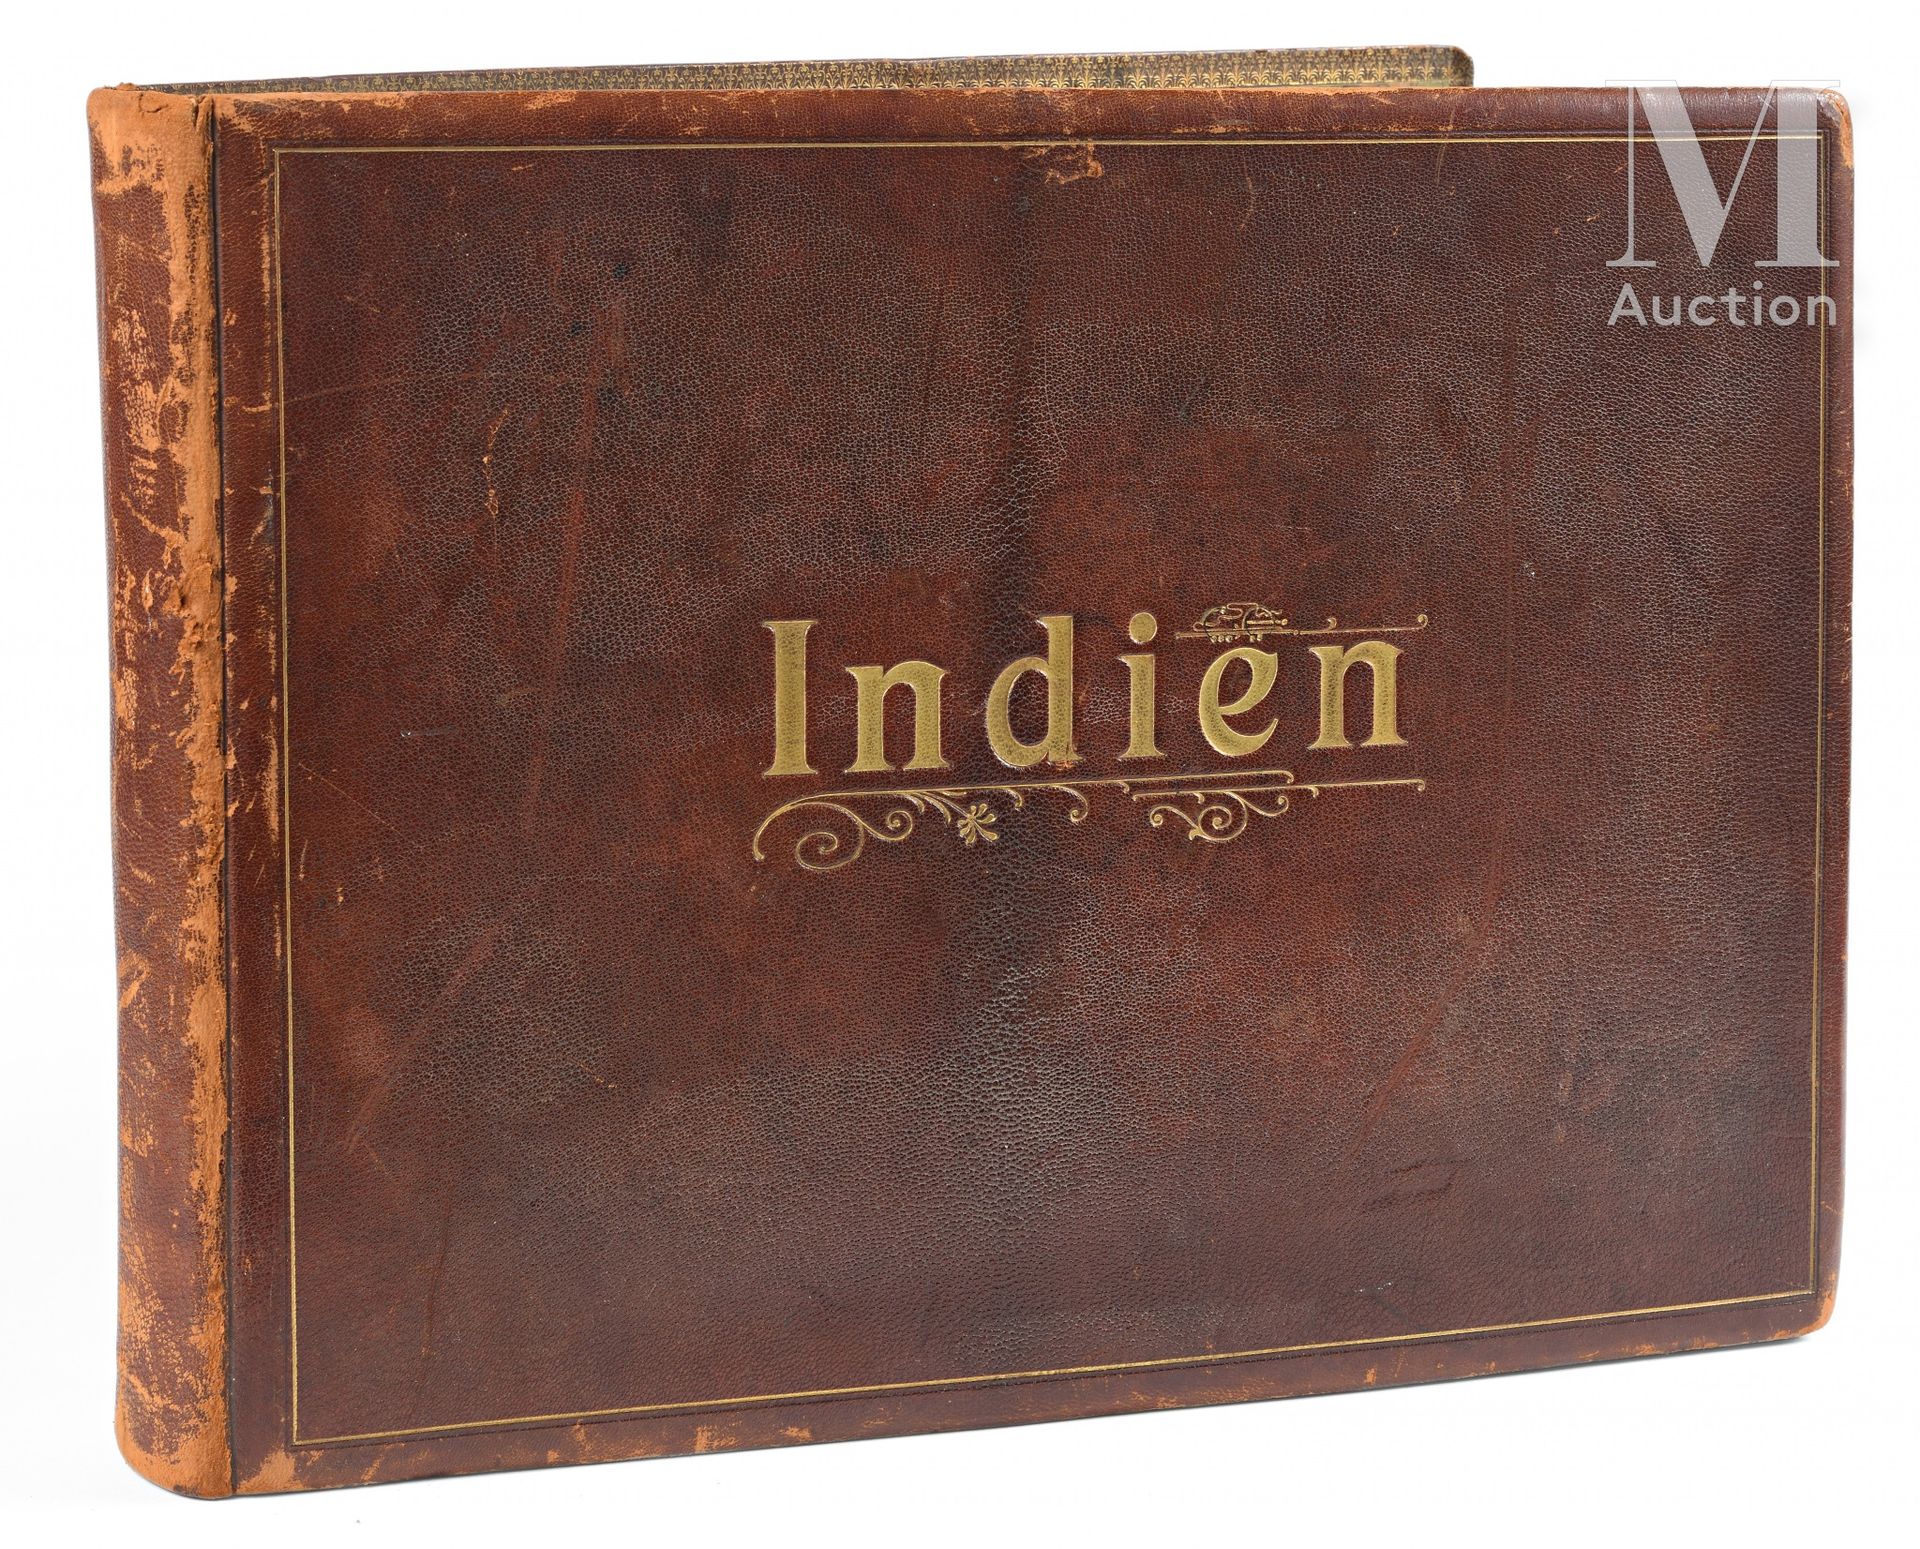 Album INDES Circa 1900

Italian album (46 x 33 cm) containing 27 original photog&hellip;